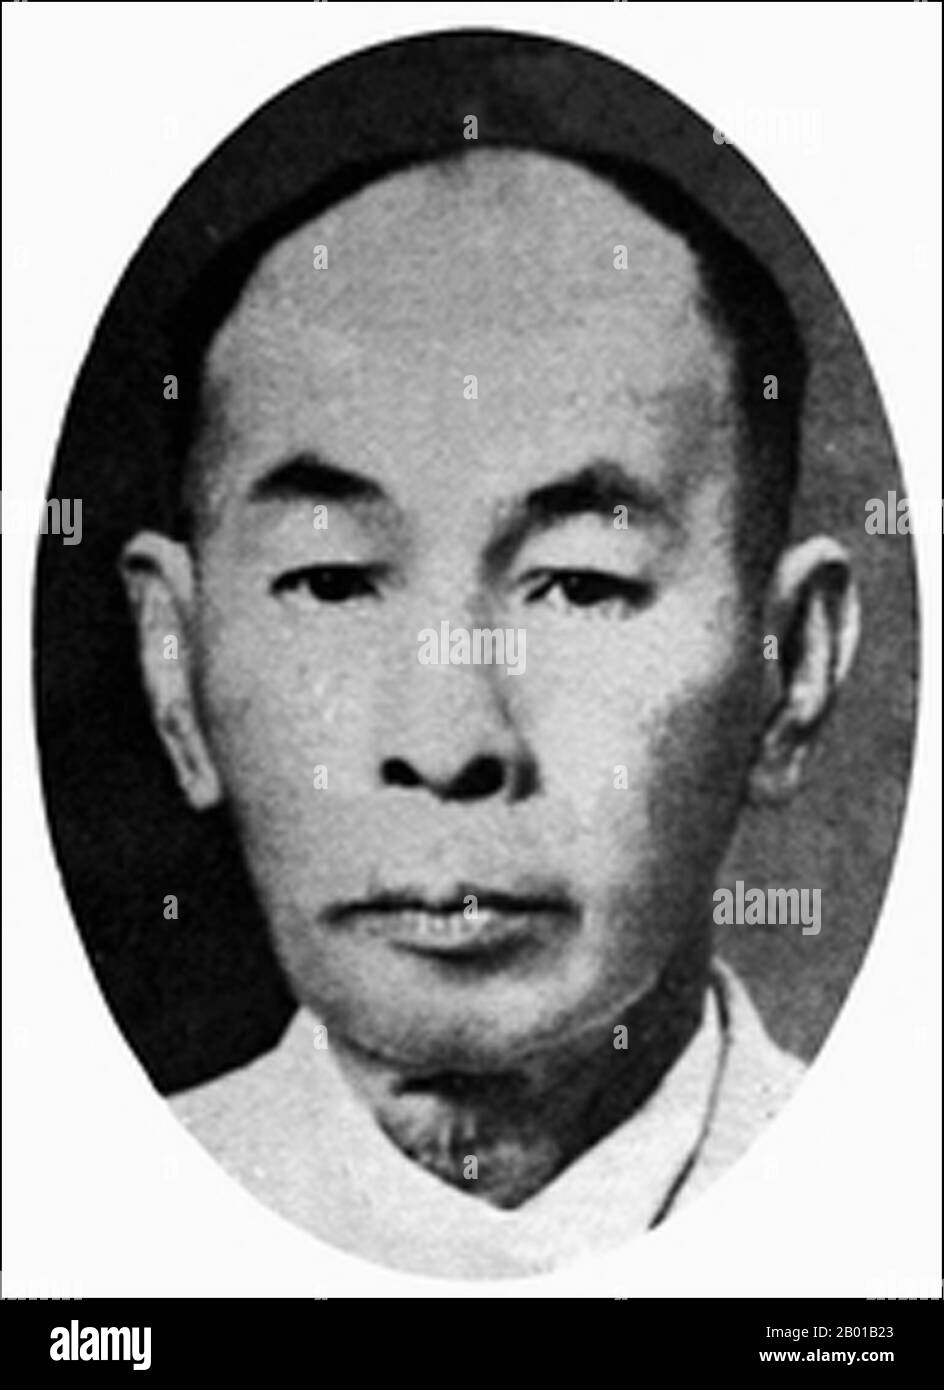 Thailand: Phraya Manopakorn Nititada (15. Juli 1884 - 1. Oktober 1948), Premierminister von Thailand (r. 1932-1933), c. 1930s. Phraya Manopakorn Nitithada, geboren in Kon Hutasingha, war der erste Premierminister von Siam nach der siamesischen Revolution von 1932. Er wurde vom Führer der Volkspartei - der Partei, die die Revolution anstiftete - ausgewählt. Im folgenden Jahr, 1933, wurde Manopakorn jedoch durch einen Staatsstreich aufgrund von Konflikten zwischen Mitgliedern der Volkspartei gestürzt. Manopakorn wurde dann mit dem Zug nach Penang, British Malaya, verbannt und verbrachte dort den Rest seines Lebens bis zu seinem Tod im Jahr 1948. Stockfoto